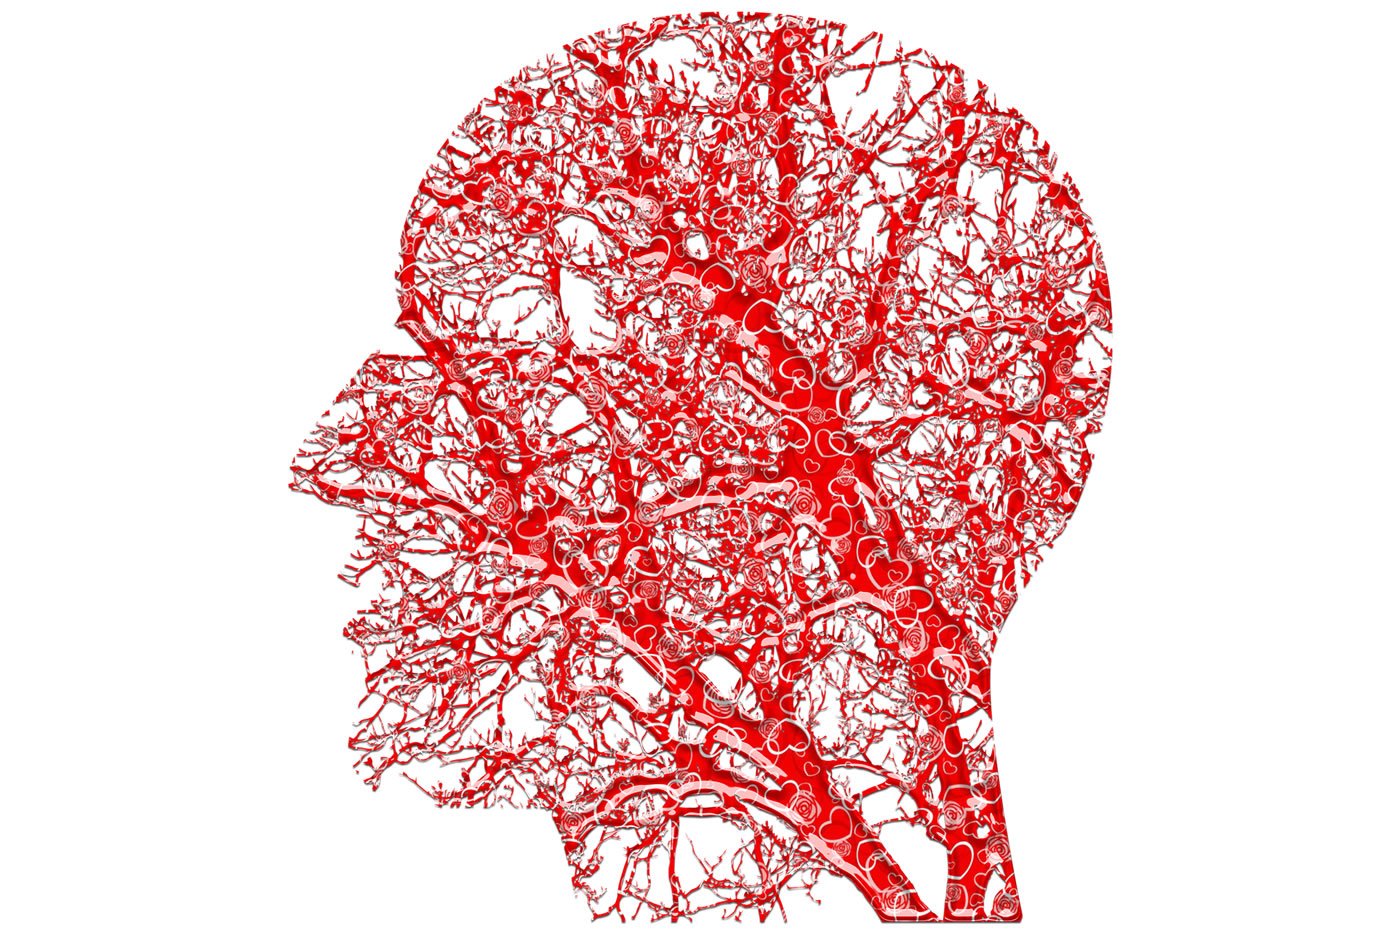 Questo mostra una testa fatta di vasi sanguigni